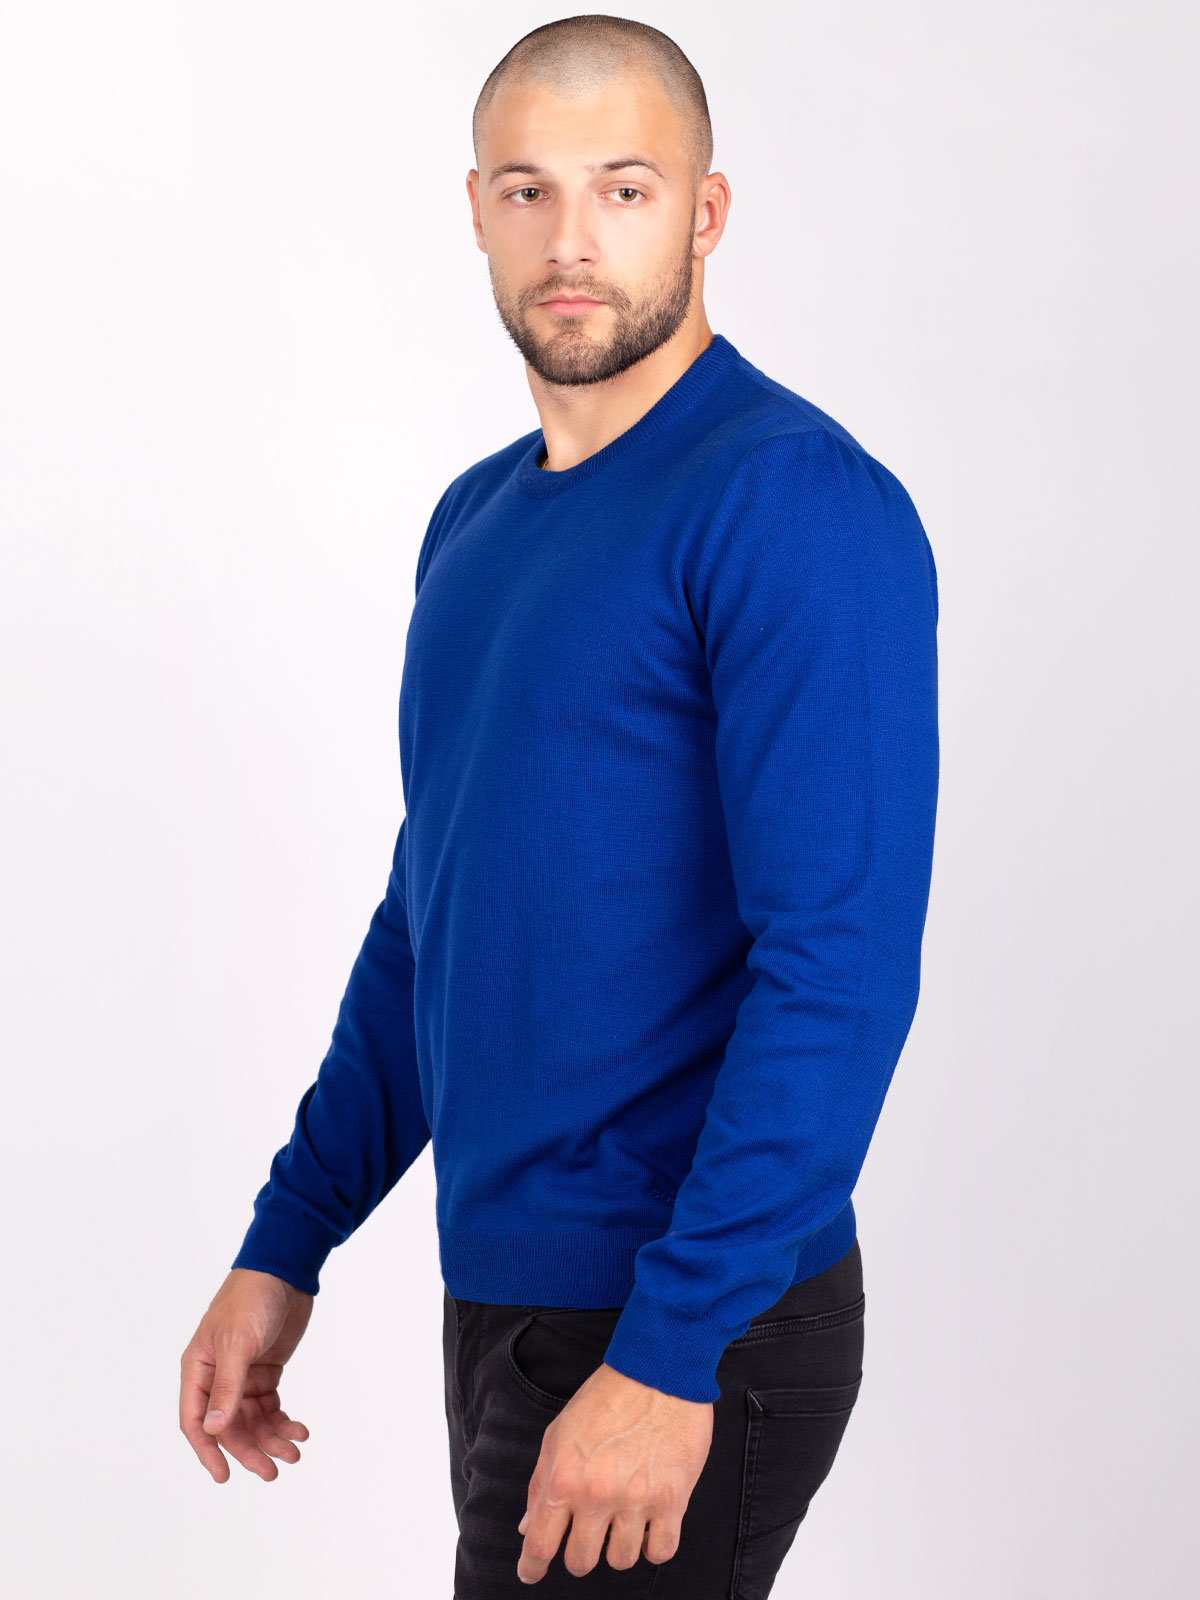 Пуловер в цвят син парламент - 35300 39.00 лв img2